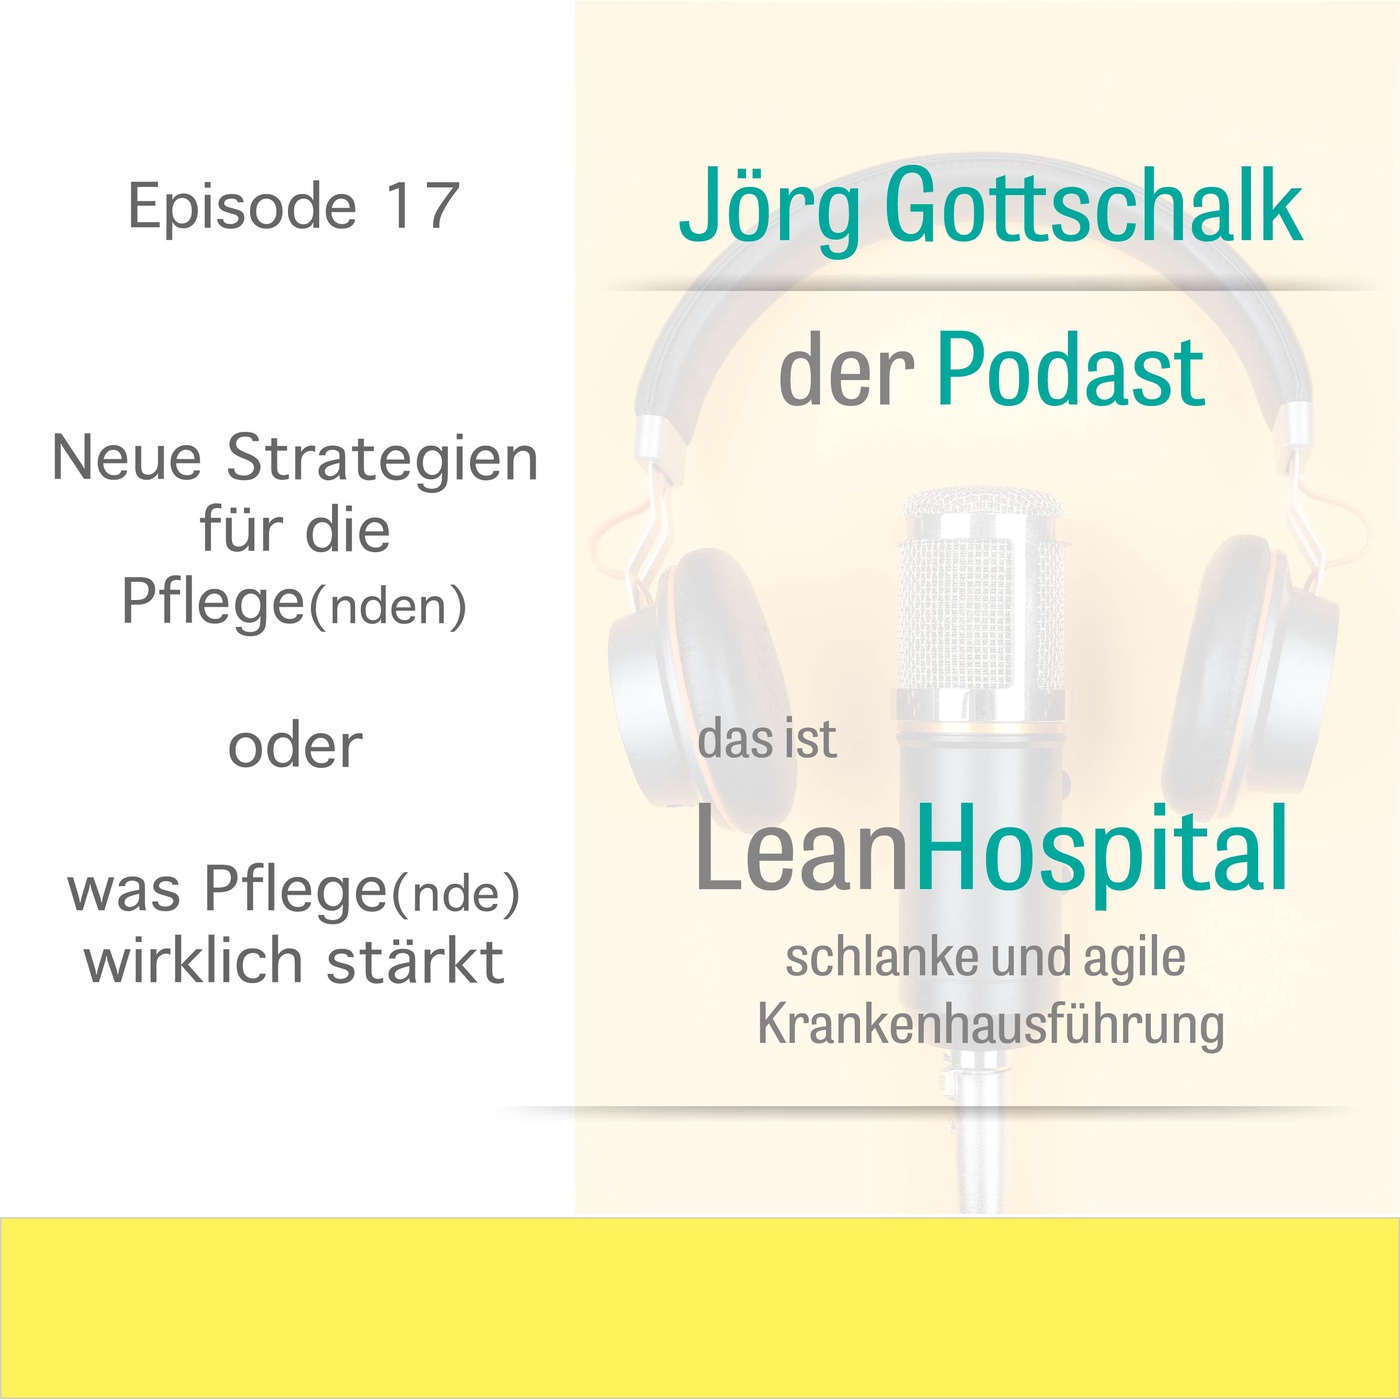 Episode 17: Neue Strategien fuer die Pflege(nden)